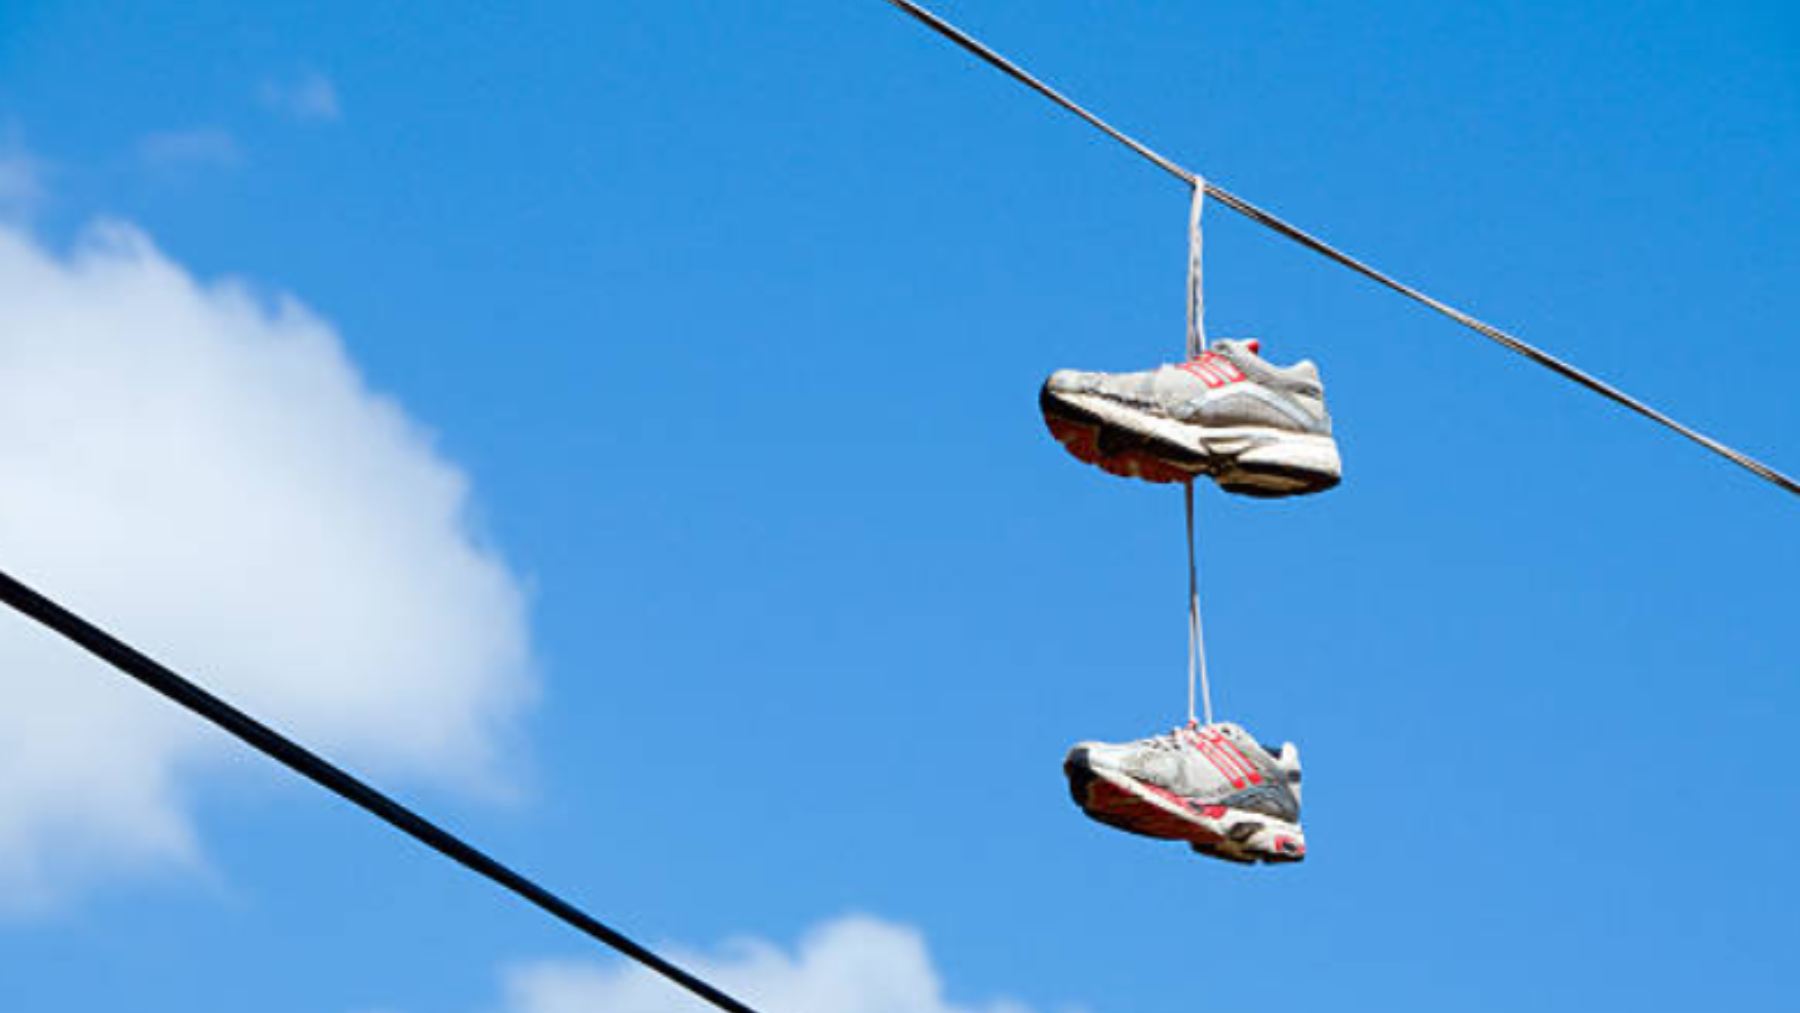 Cuidado si ves zapatillas colgadas en los cables de la luz: es peligroso